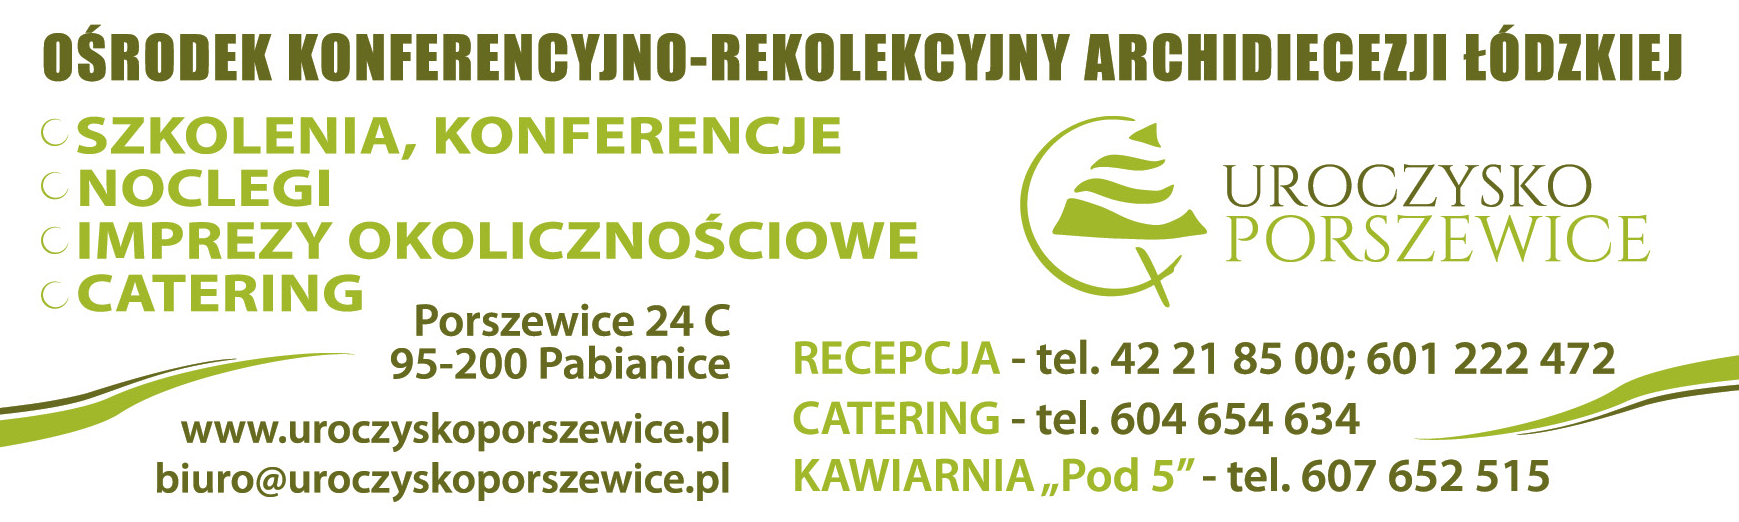 UROCZYSKO PORSZEWICE Ośrodek Konferencyjno-Rekolekcyjny Archidiecezji Łódzkiej